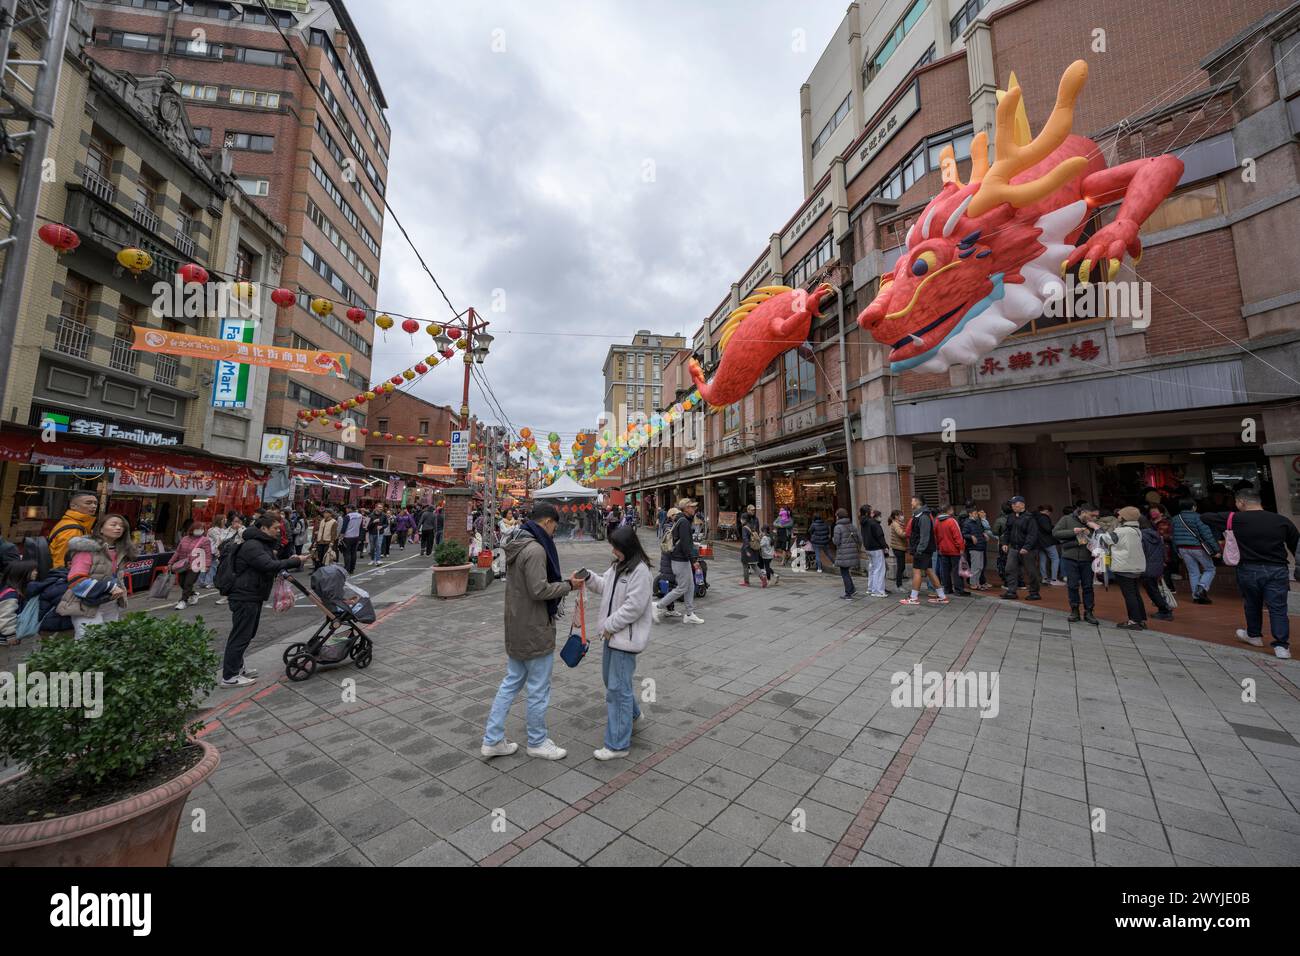 Strada trafficata catturata in pieno giorno con un grande drago cinese sopra la testa, gente che fa shopping per il Capodanno cinese Foto Stock